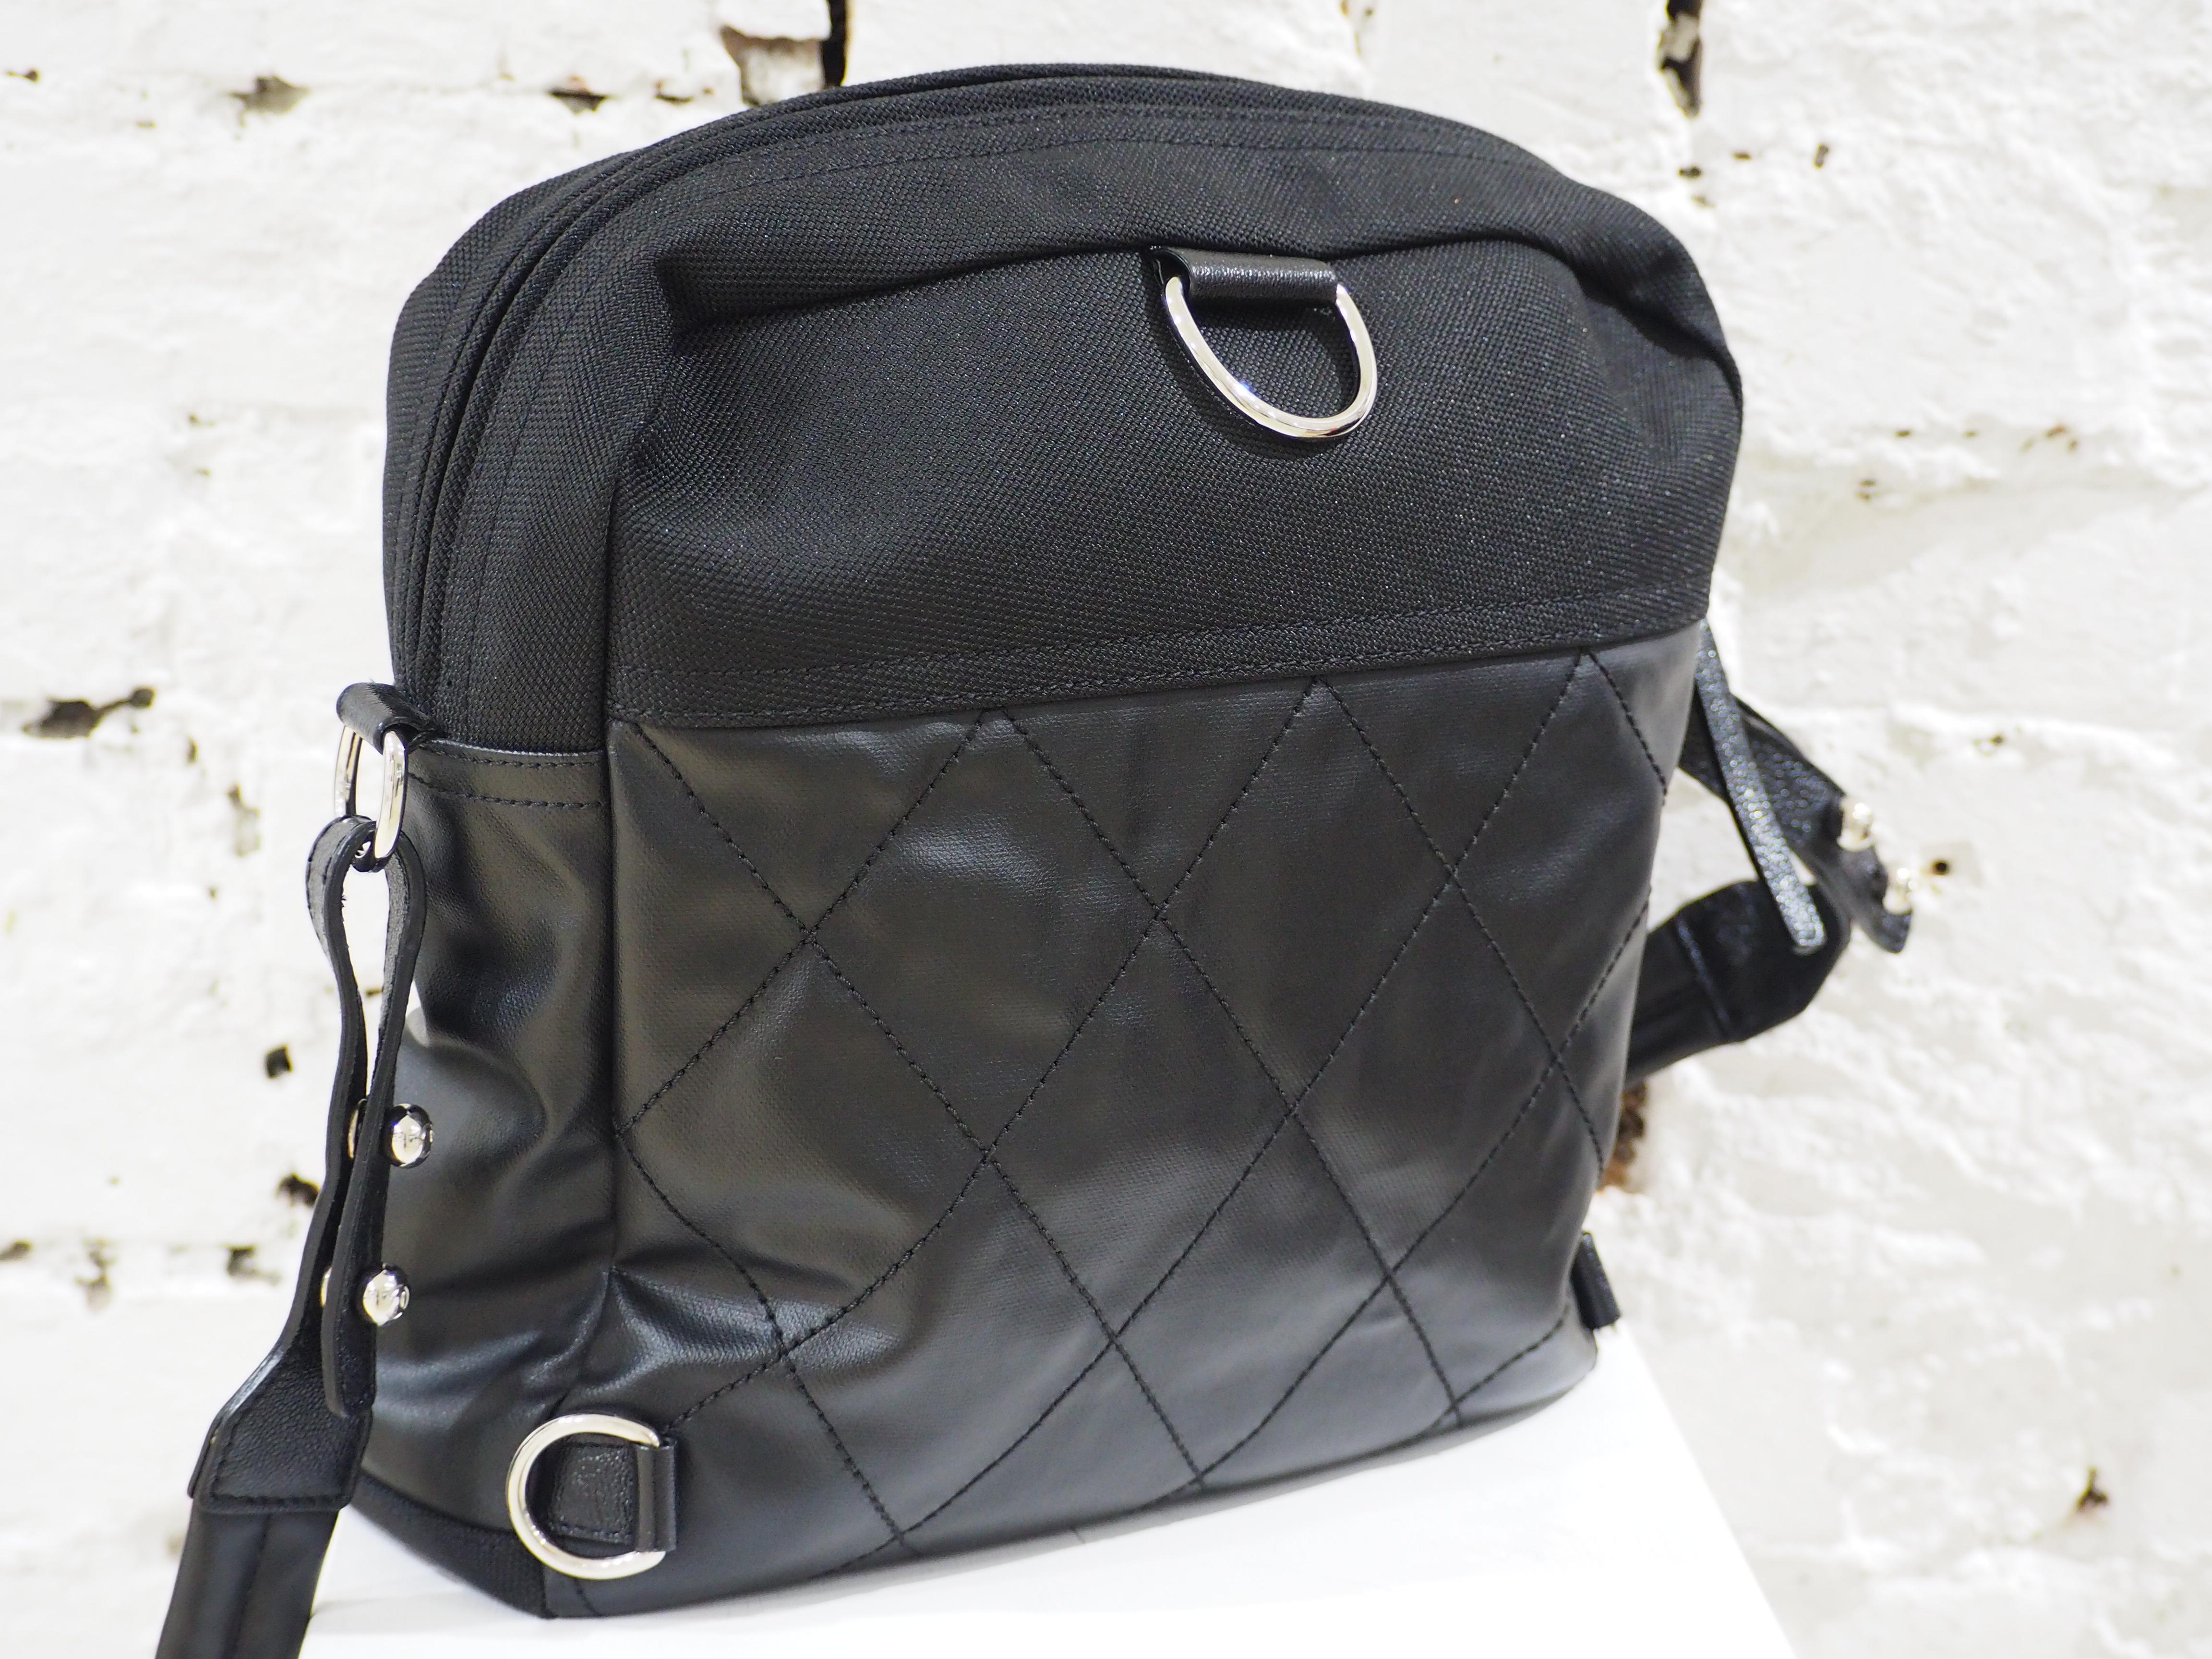 Chanel black leather textile shoulder bag / backpack
silver tone hardware
CC logo 